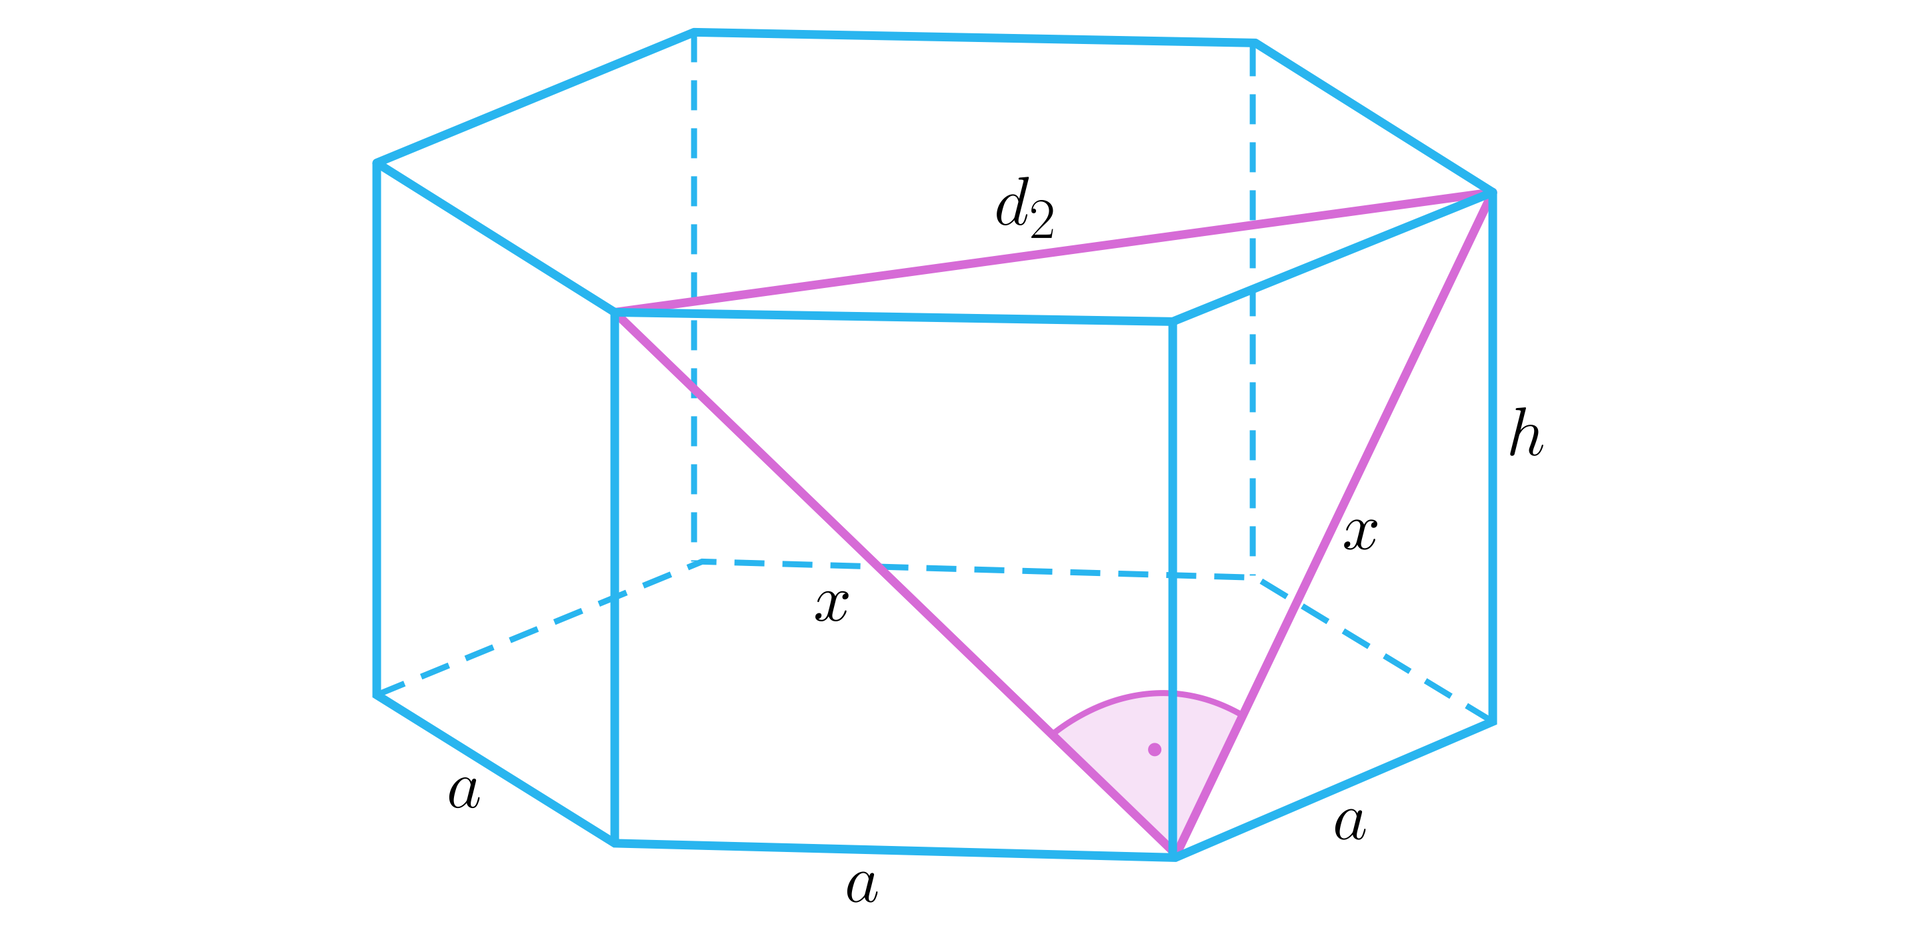 Na ilustracji przedstawiono graniastosłup prawidłowy sześciokątny o krawędzi podstawy równej a, oraz wysokości równej h. W graniastosłupie zaznaczono przekątne x, dwóch sąsiednich ścian bocznych. Przekątne łączy krótsza przekątna podstawy oznaczona małą literą z indeksem dolnym dwa. Powstał trójkąt równoramienny prostokątny, z kątem dziewięćdziesiąt stopni między przekątnymi x.